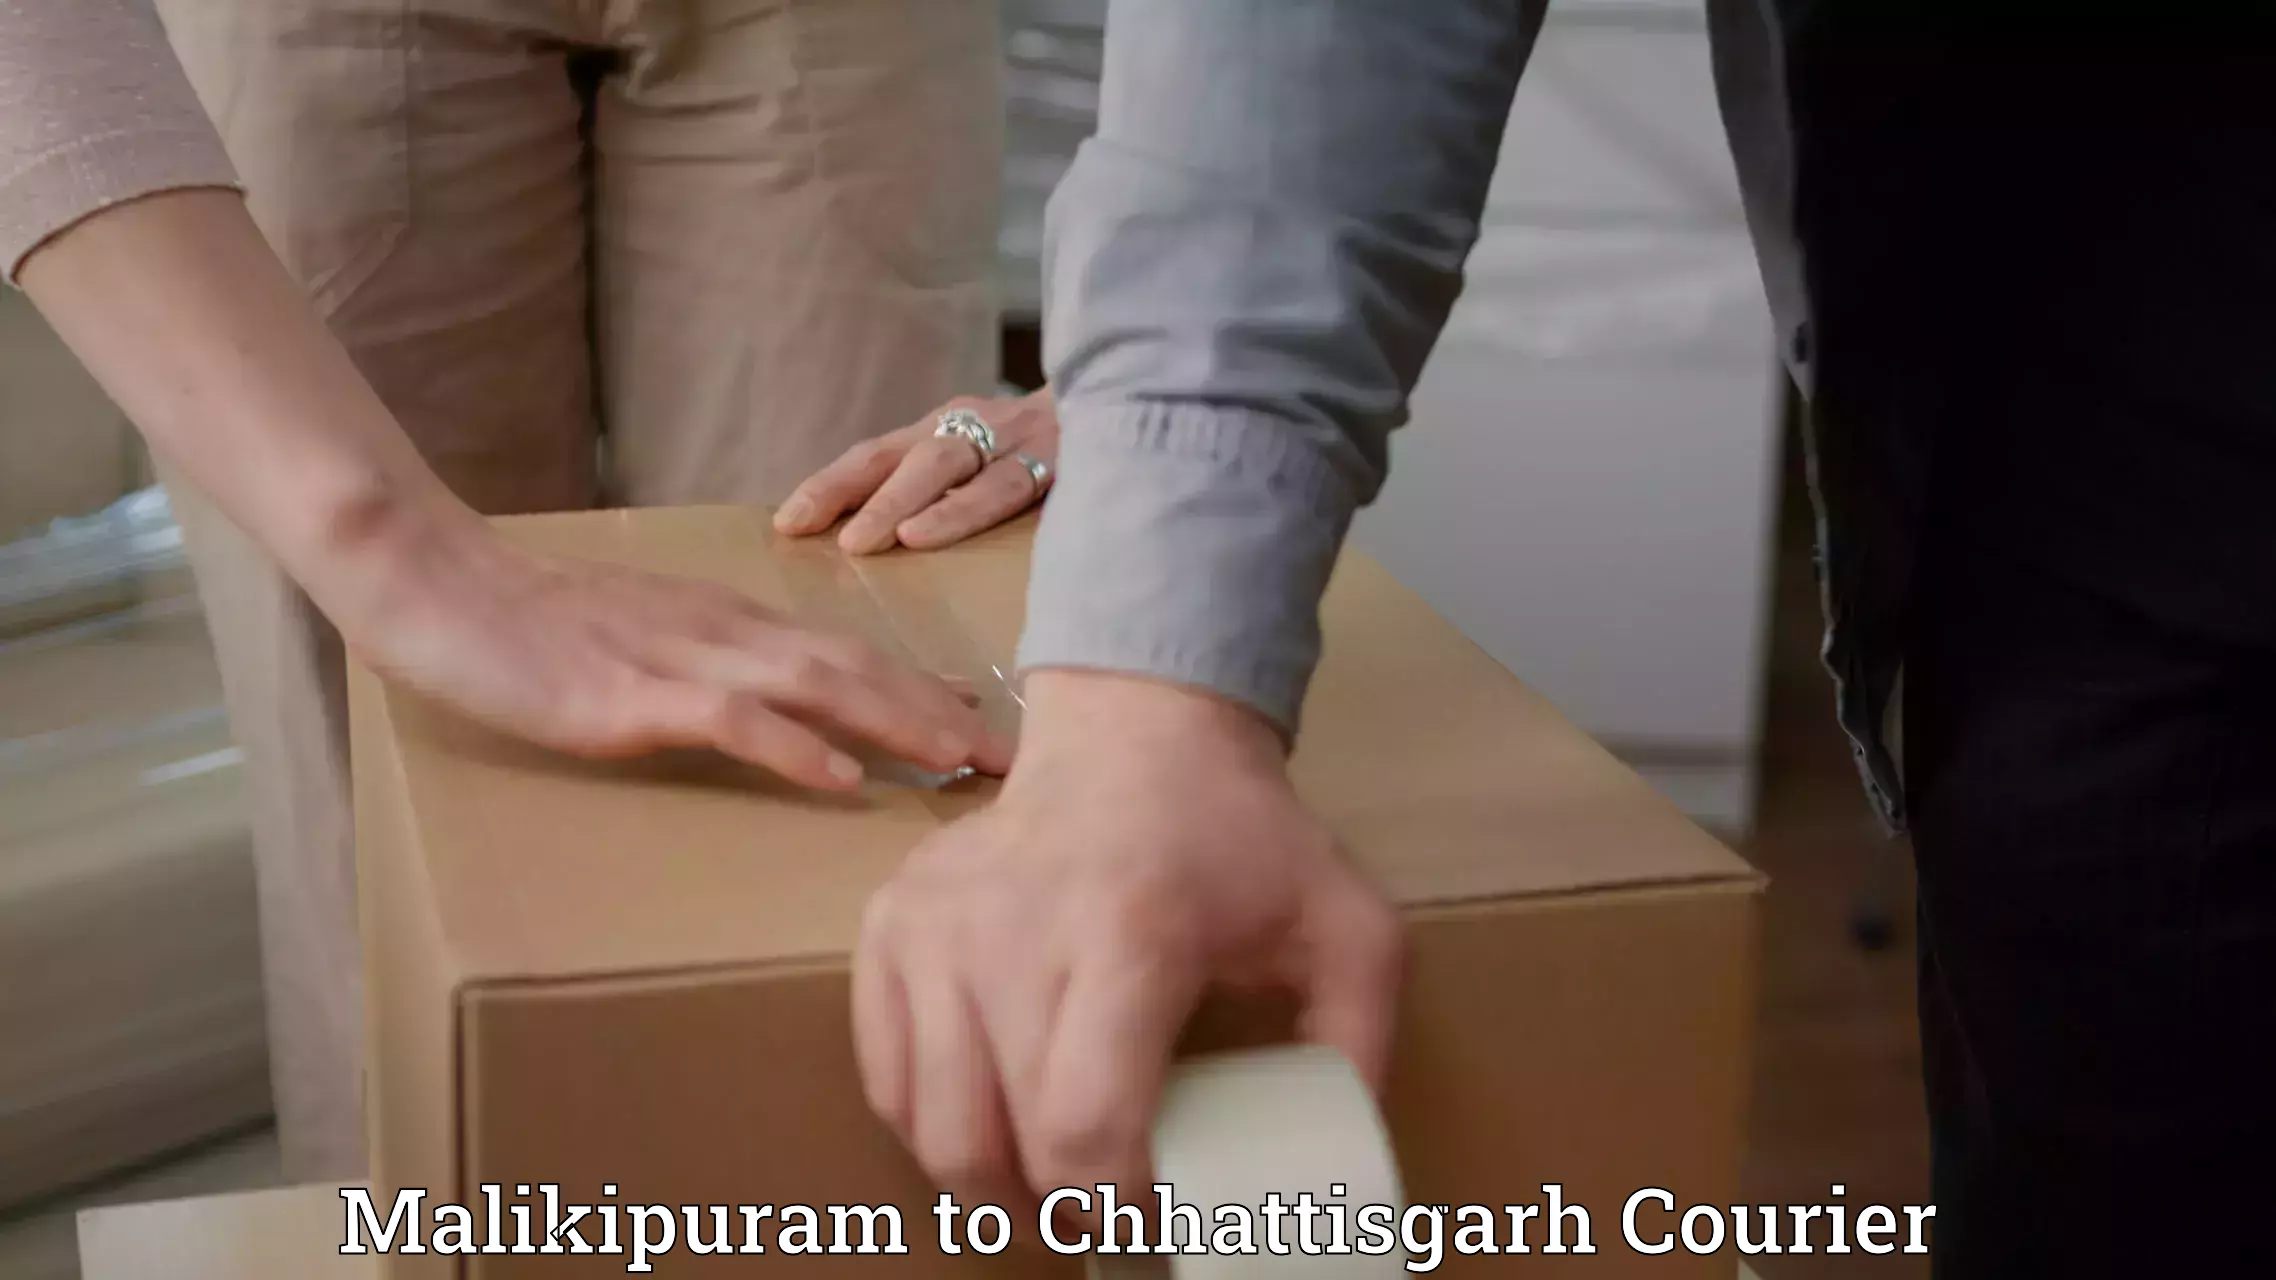 Custom courier solutions Malikipuram to Raigarh Chhattisgarh